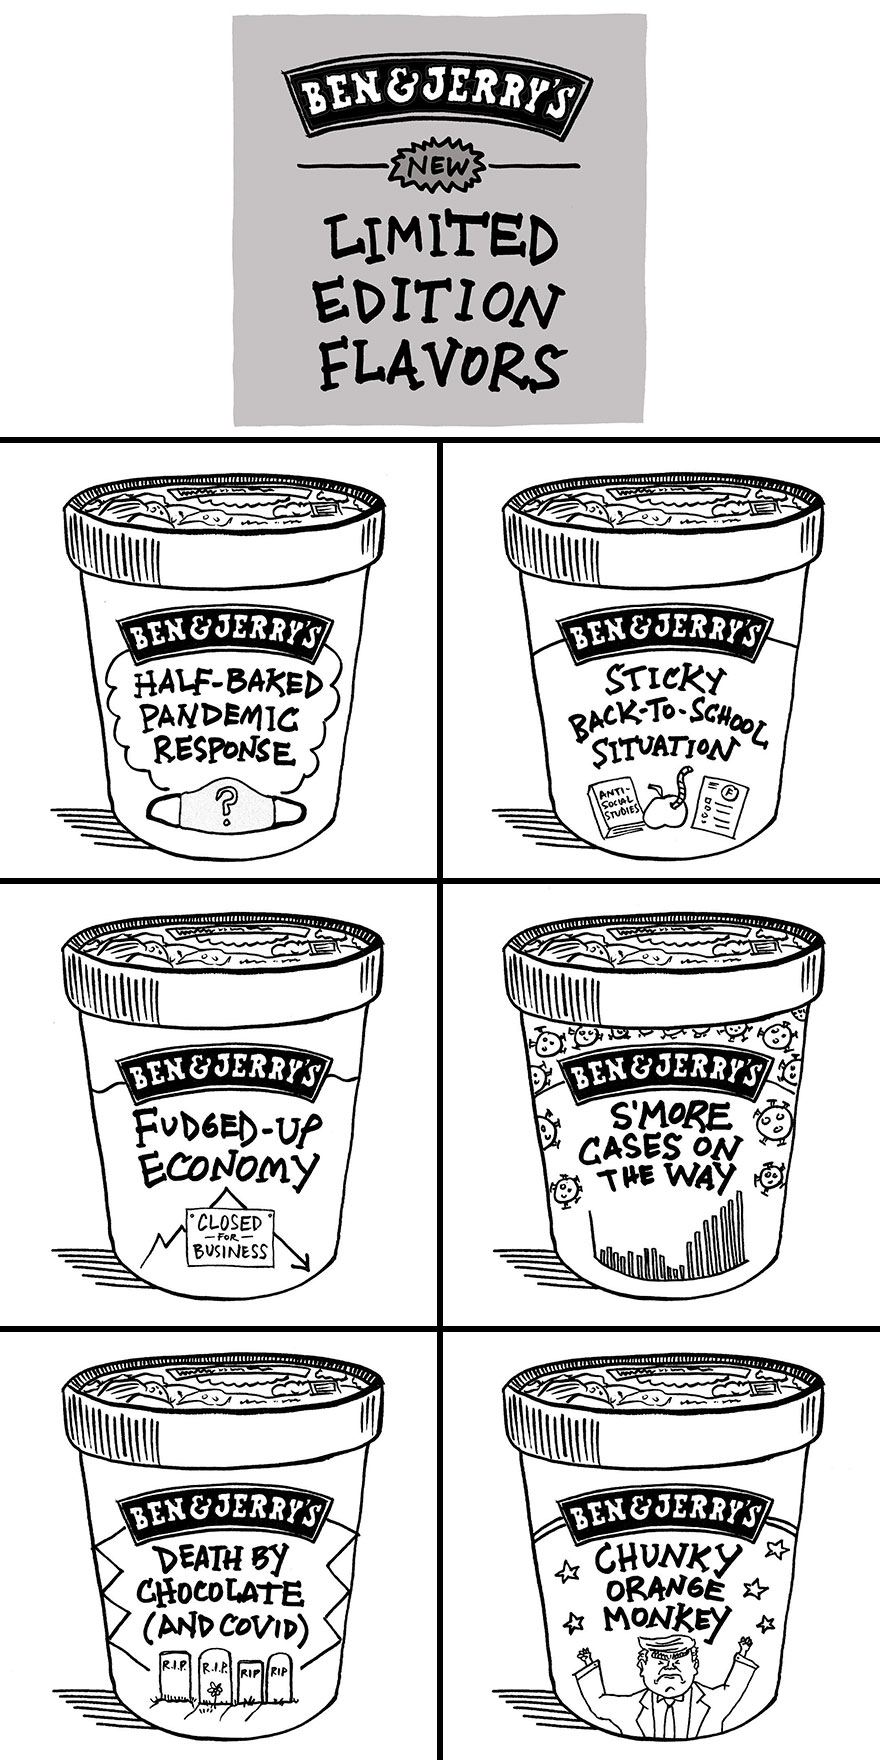 Coronavirus-Comics-Pandemic-Humor-Mark-Zukor